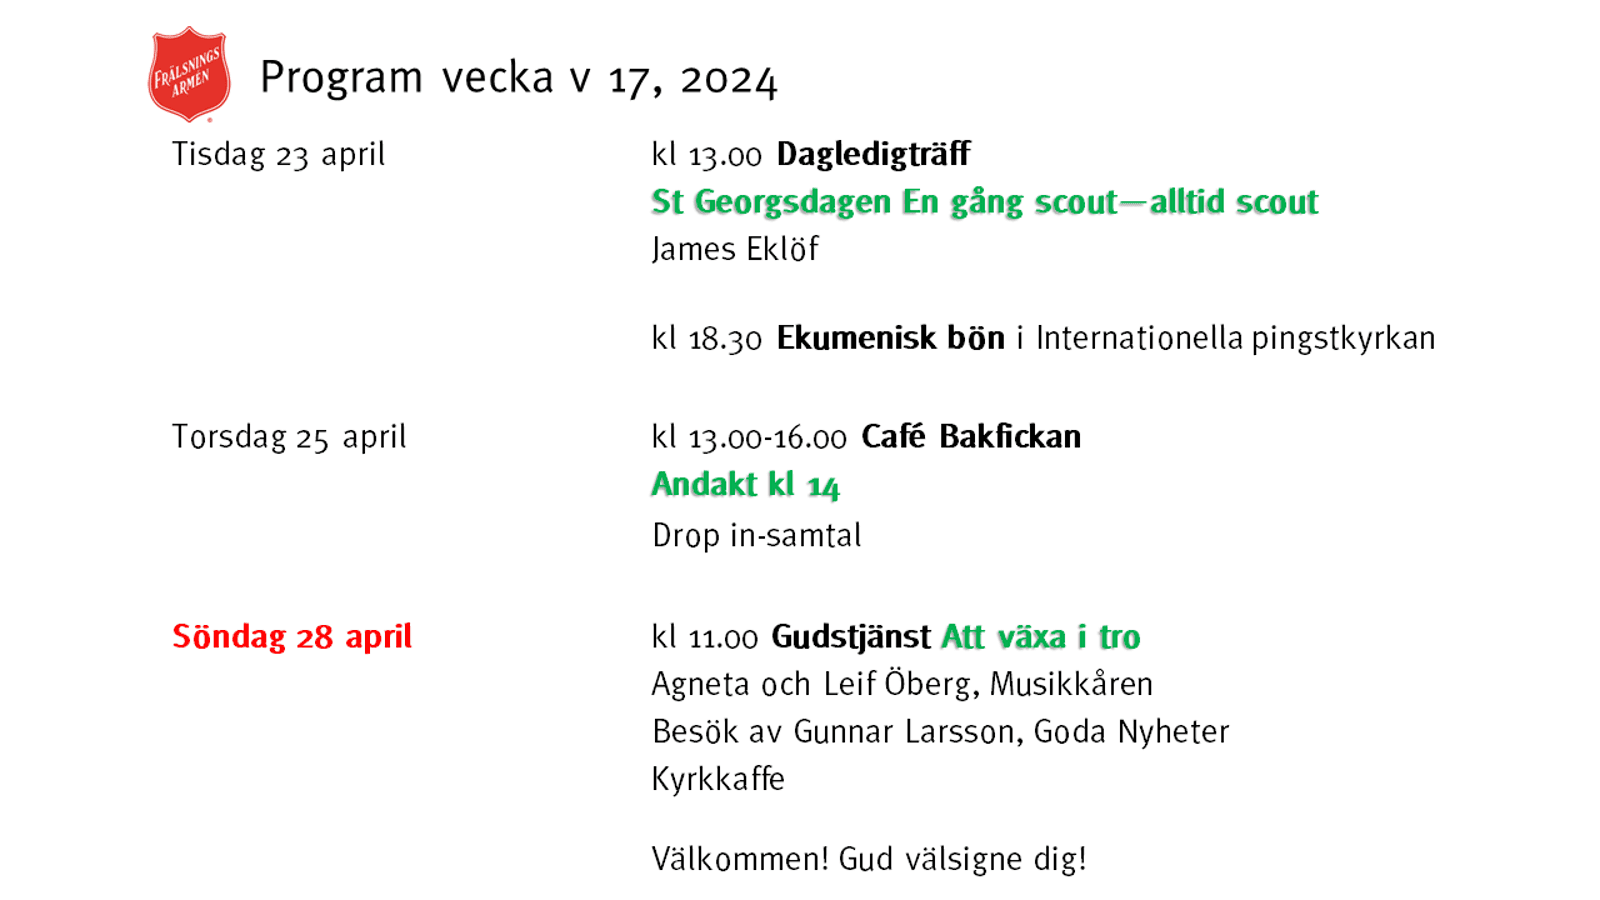 Program v 17, 2024